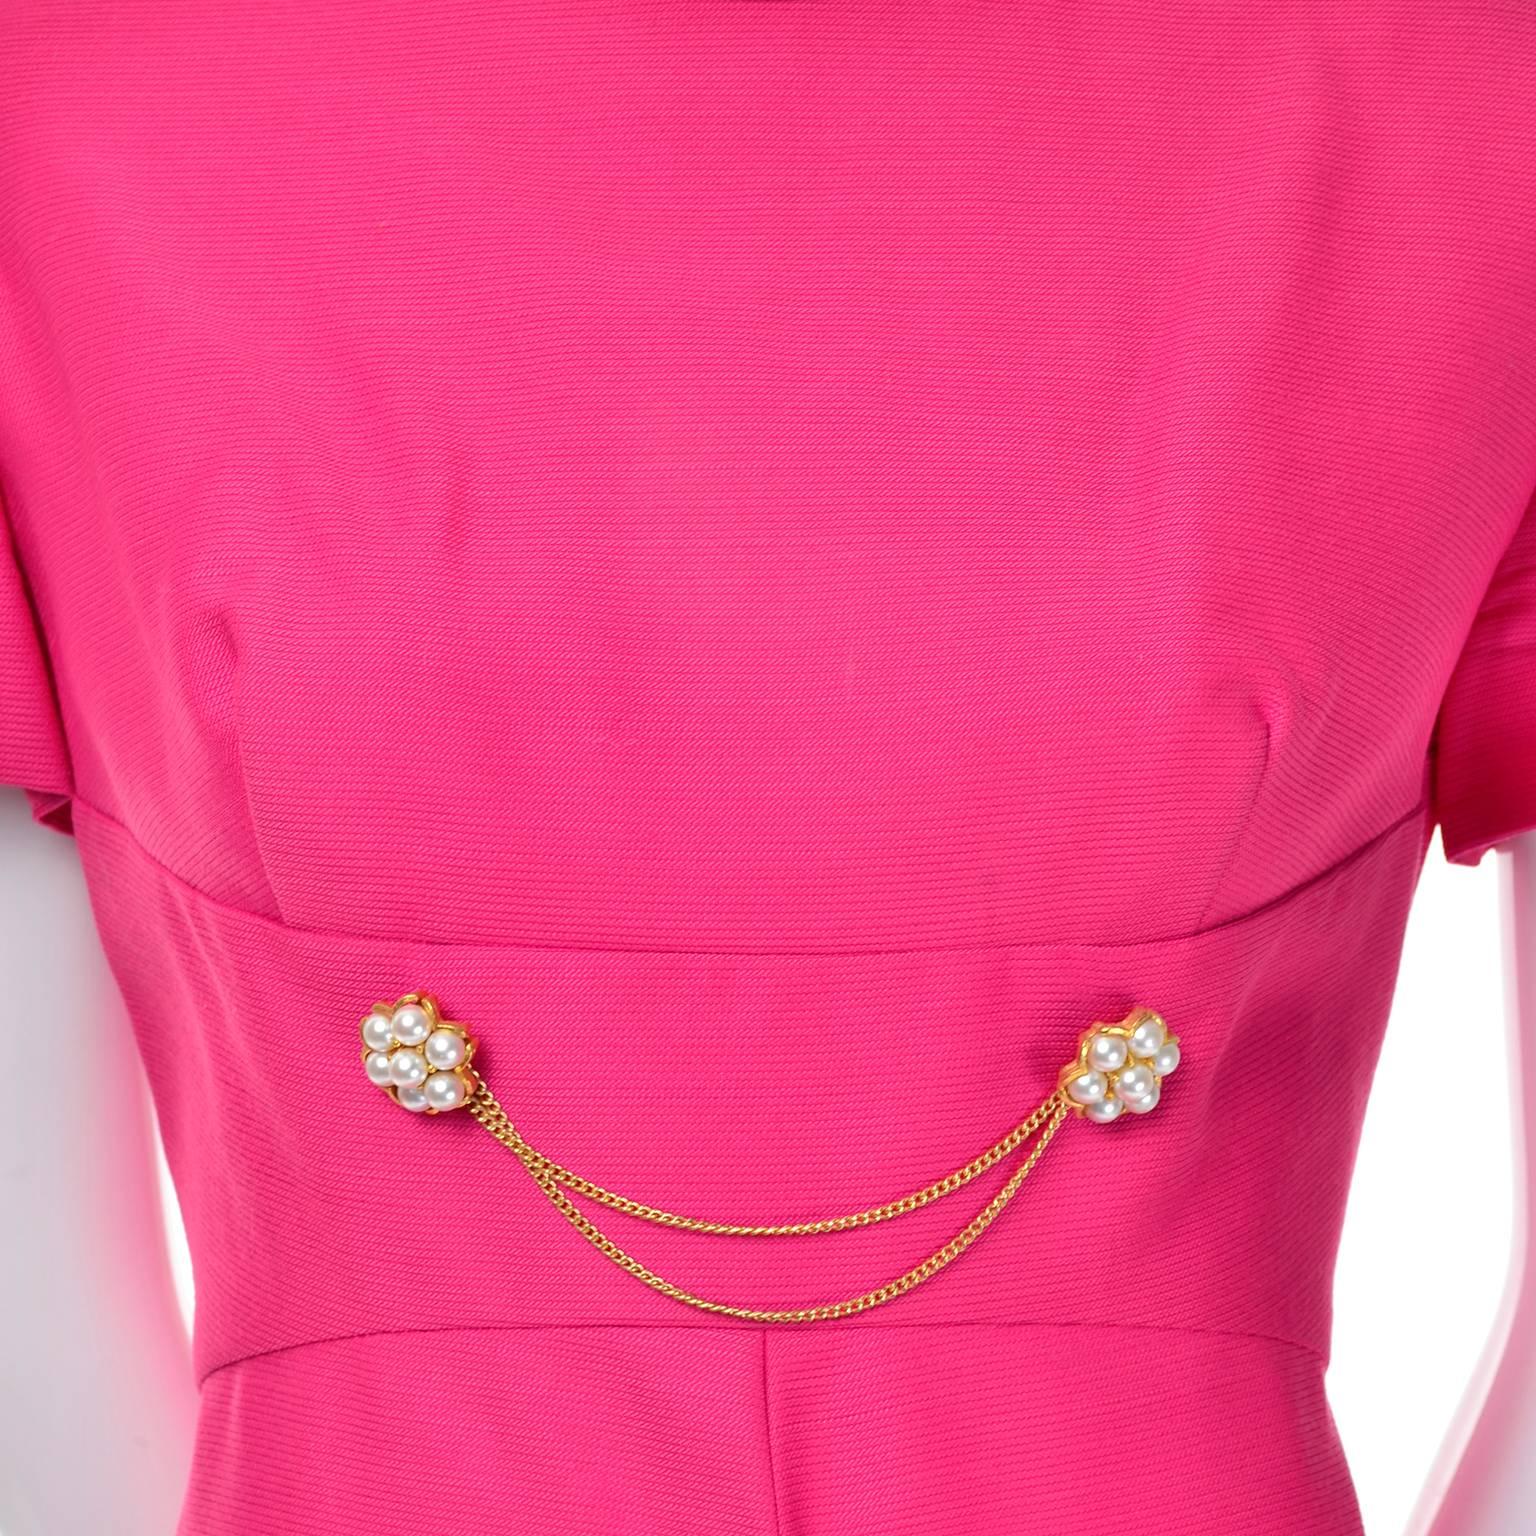 Women's 1960s Emma Domb Pink Dress and Coat Suit Ensemble Excellent Condition